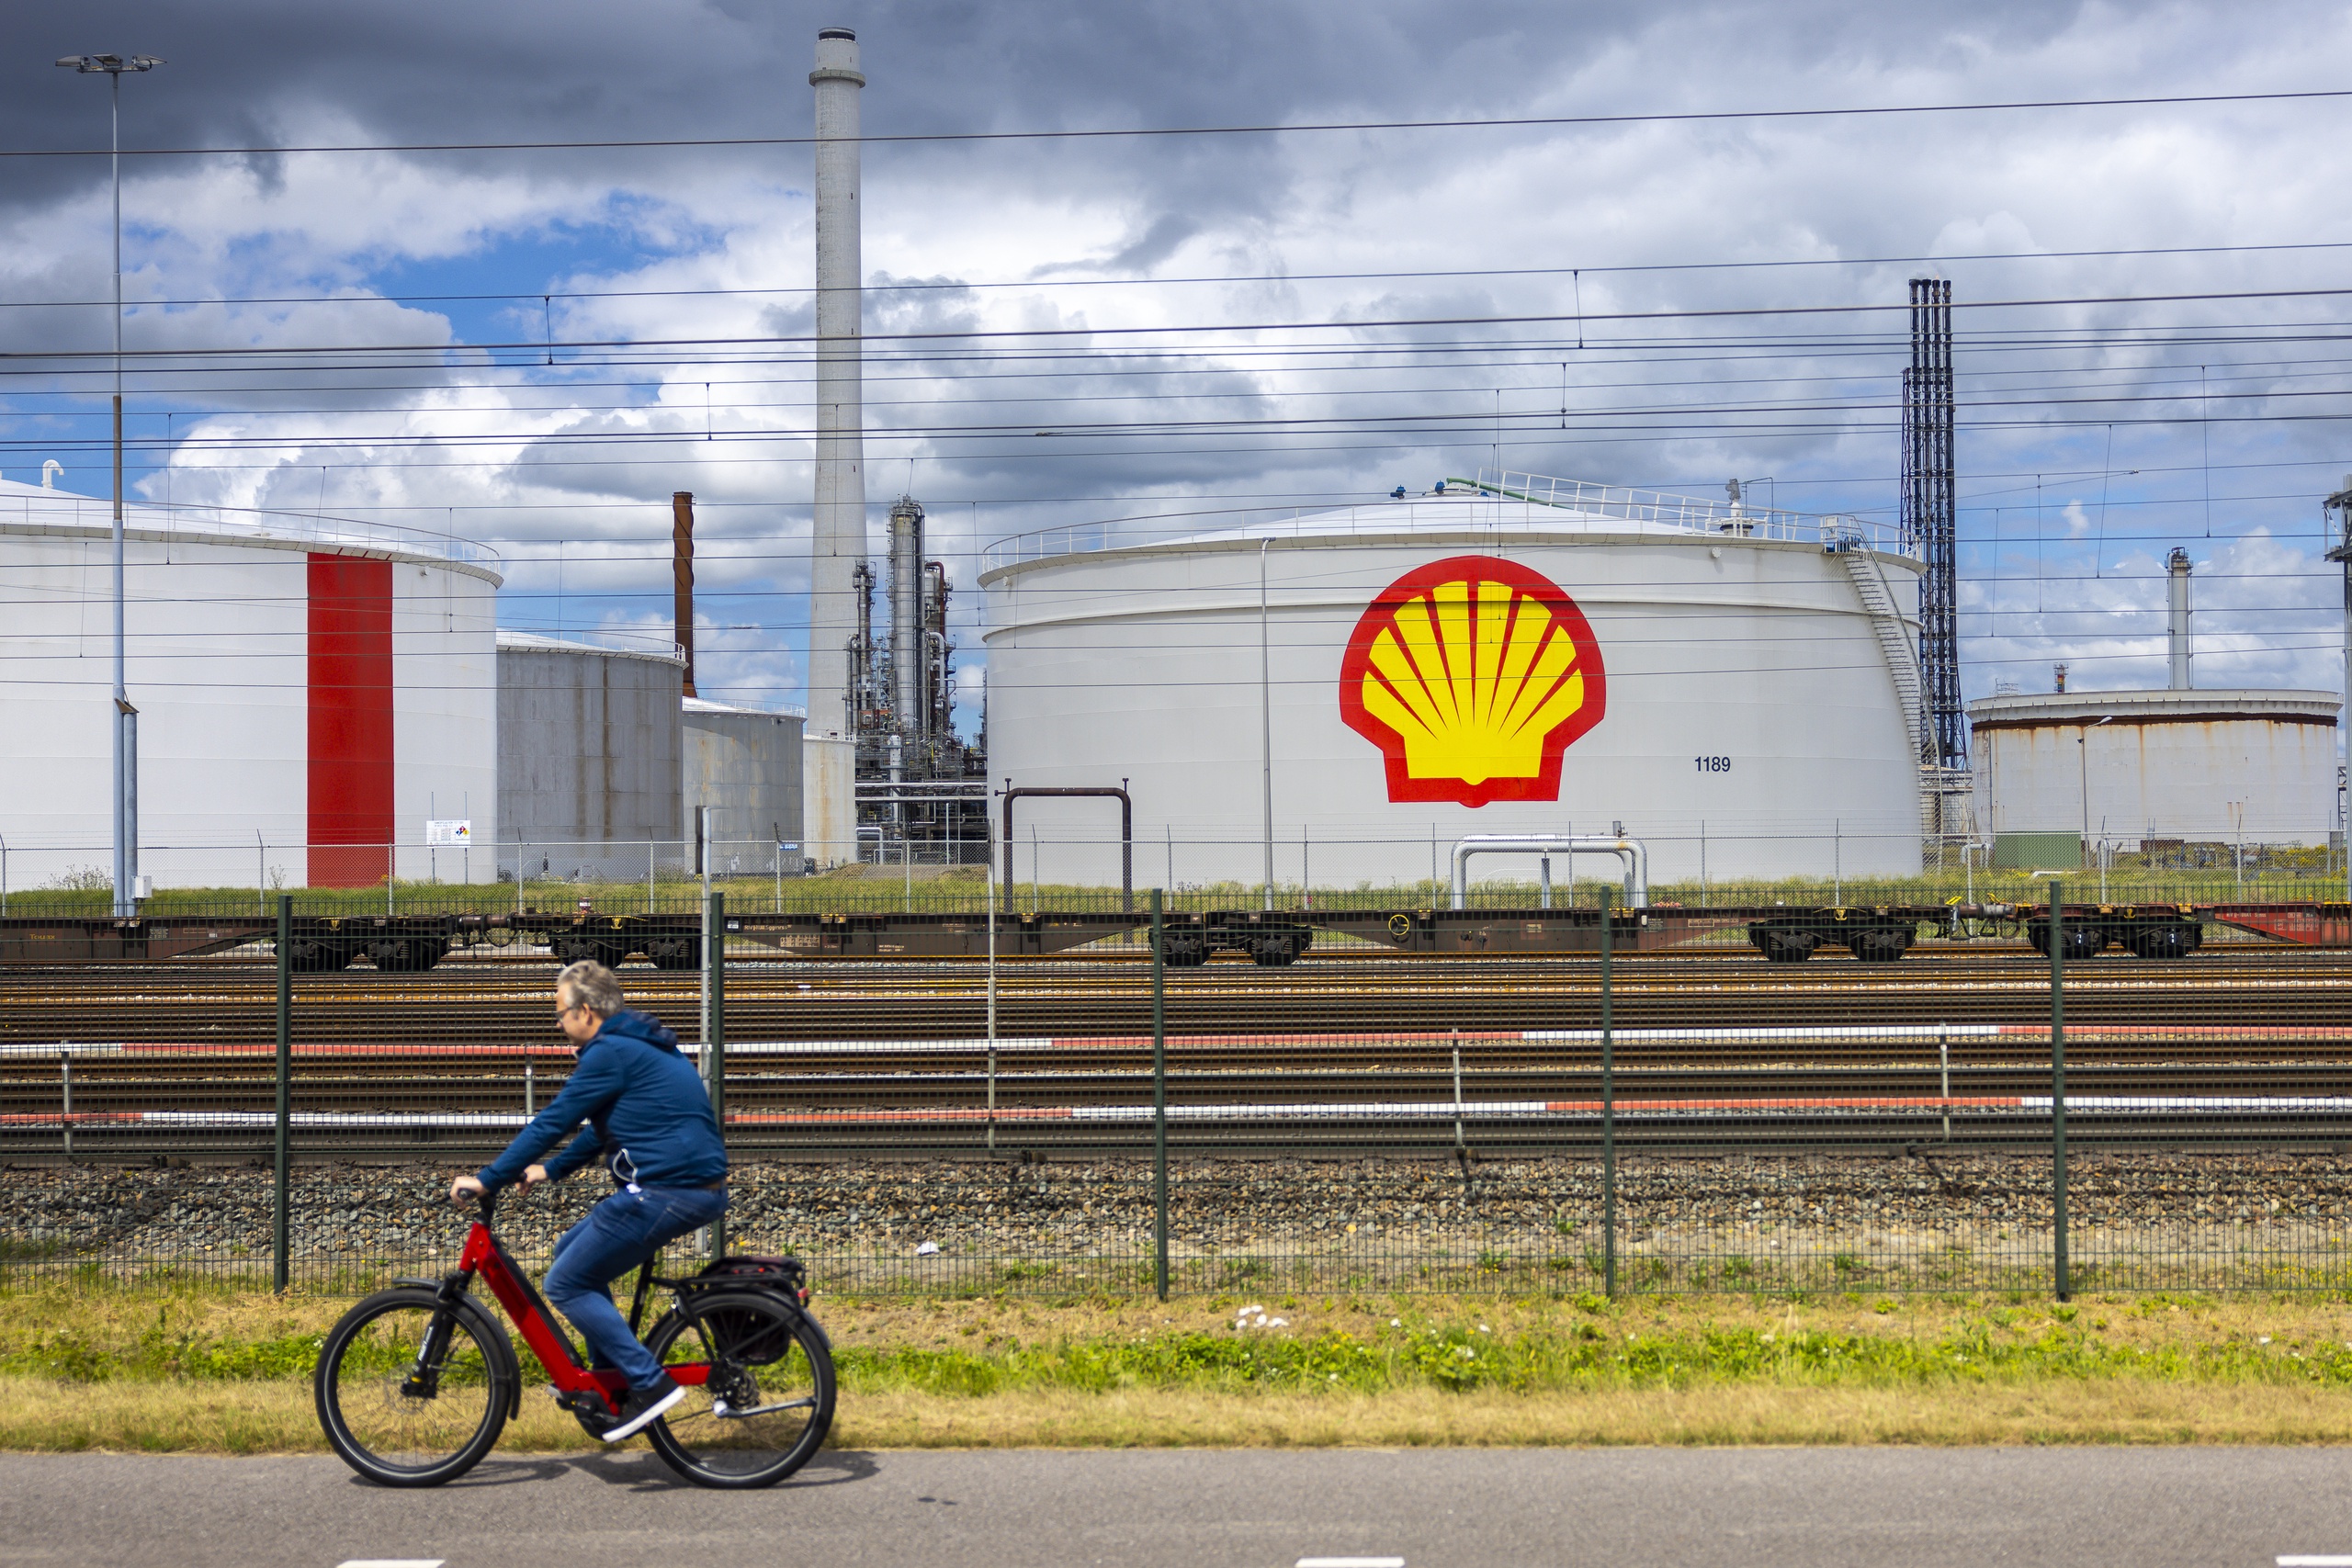 Olie en gasconcern Shell in het botlekgebied.